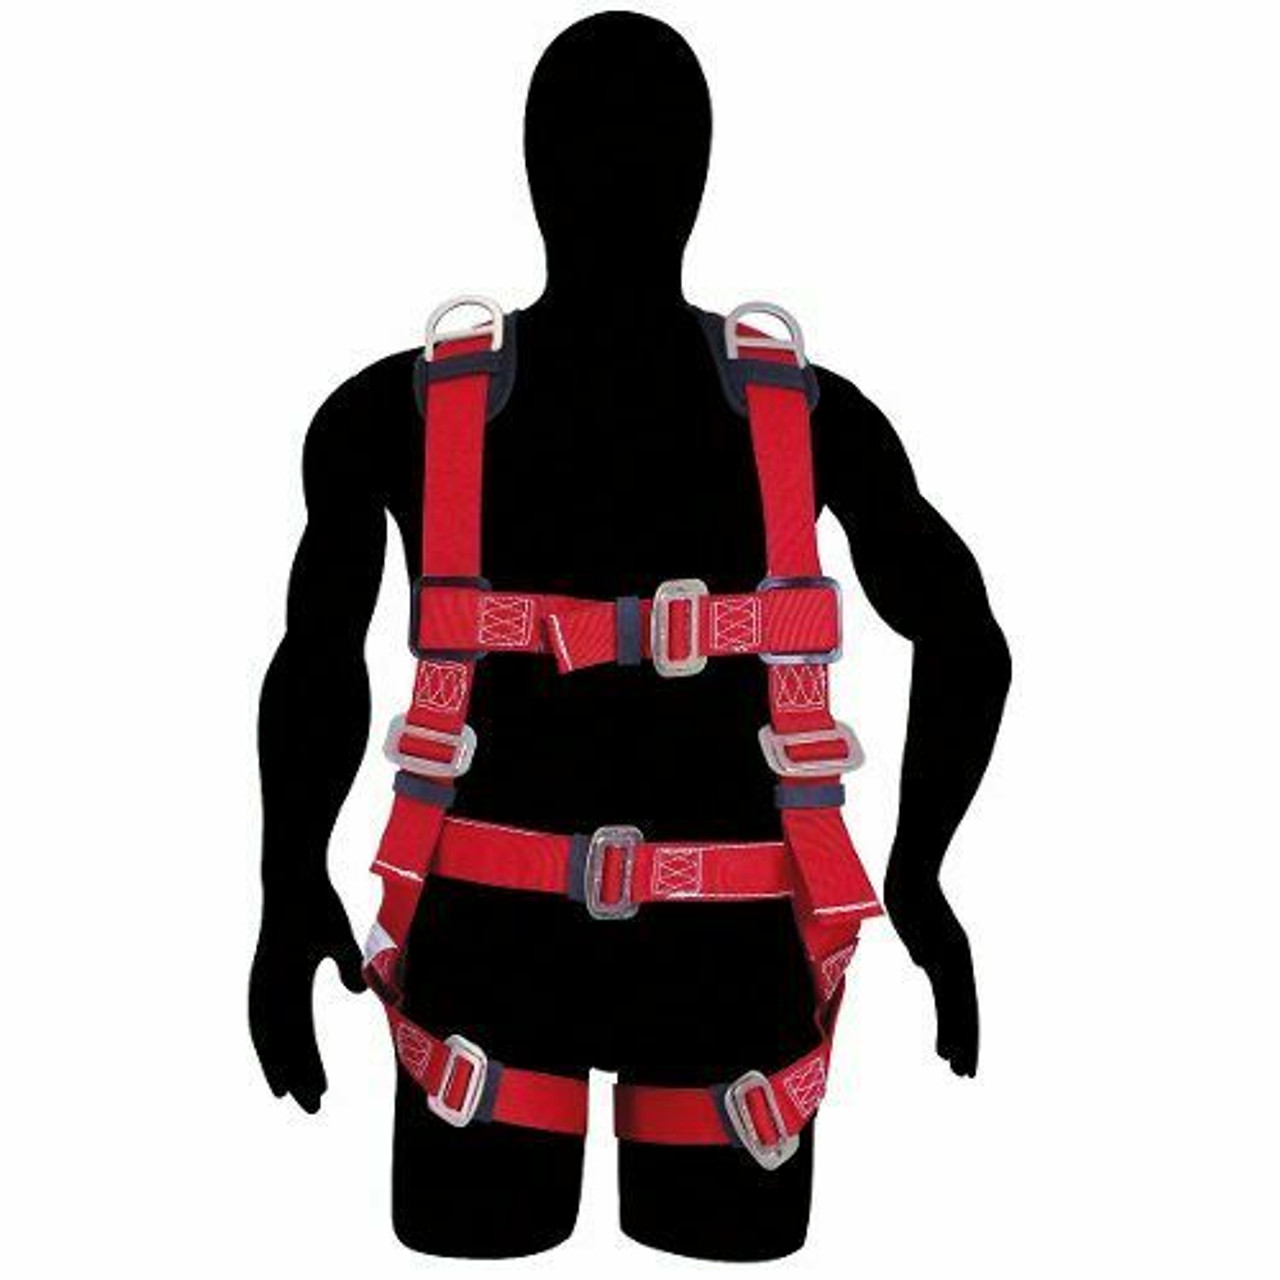 Rescue harness Size 36-40 USA8A